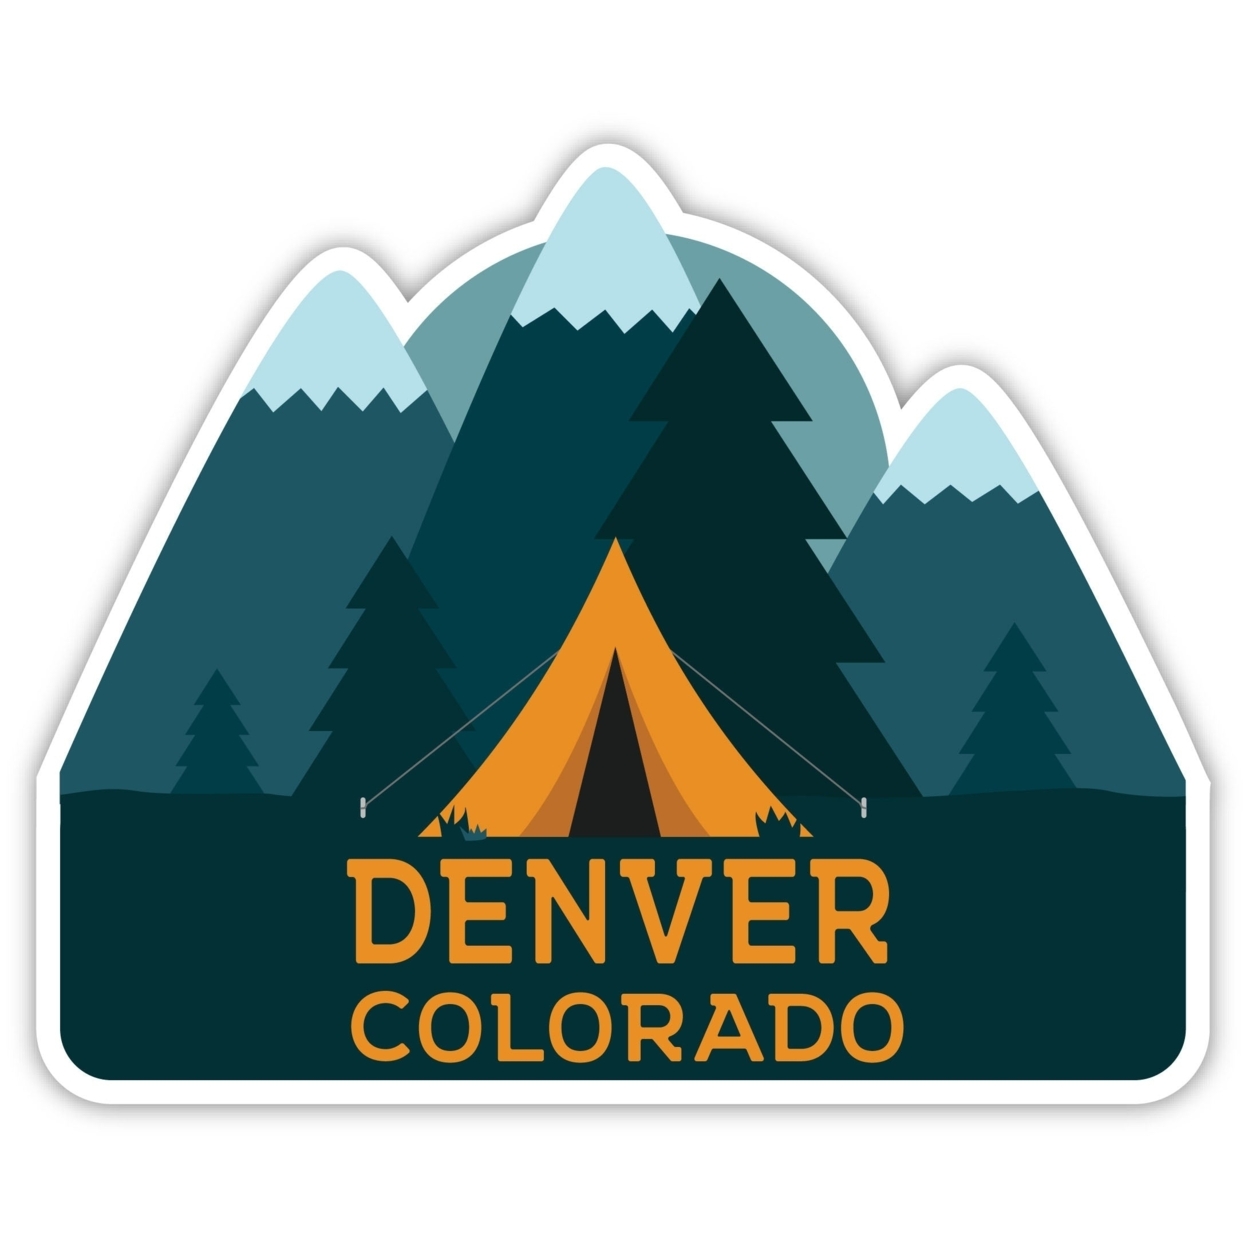 Denver Colorado Souvenir Decorative Stickers (Choose Theme And Size) - Single Unit, 8-Inch, Tent